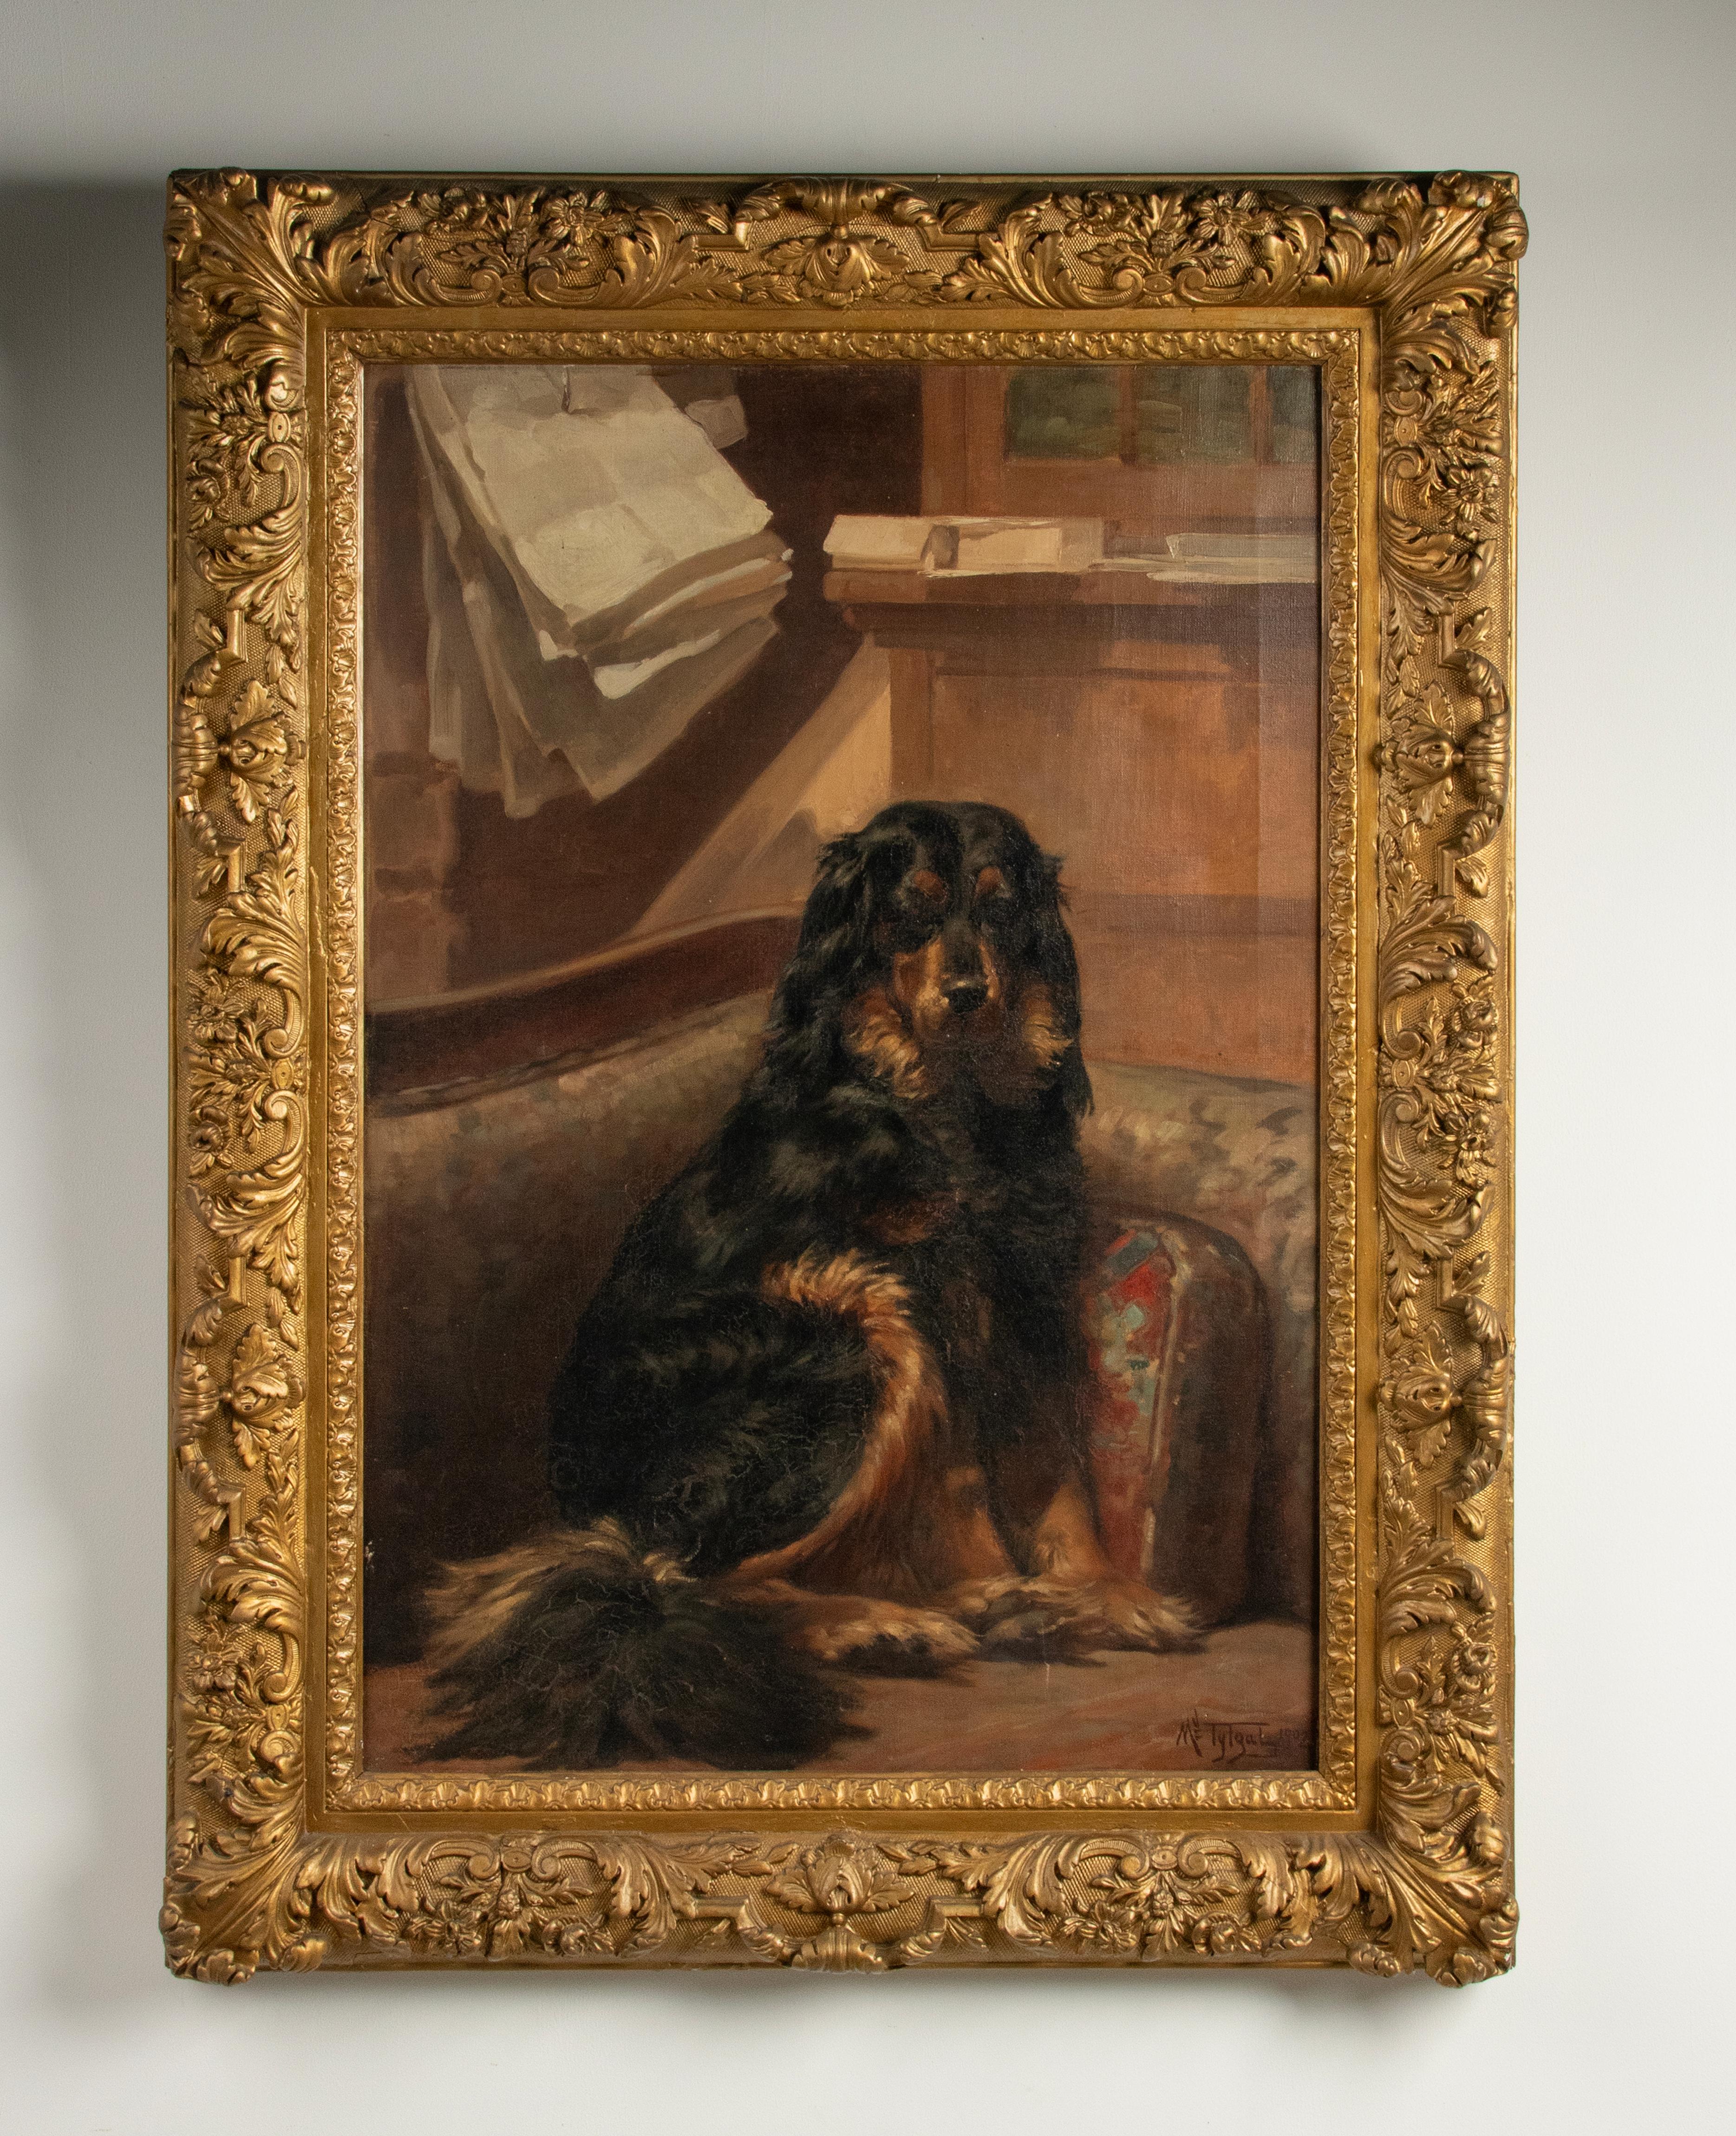 Un magnifique portrait de chien ancien d'un Setter Gordon.
Le tableau est daté de 1902 et signé par Médard Tytgat.
C'est une belle scène, le chien pose de manière calme et amicale, dans un cadre familial. Le chien a une belle expression sur le